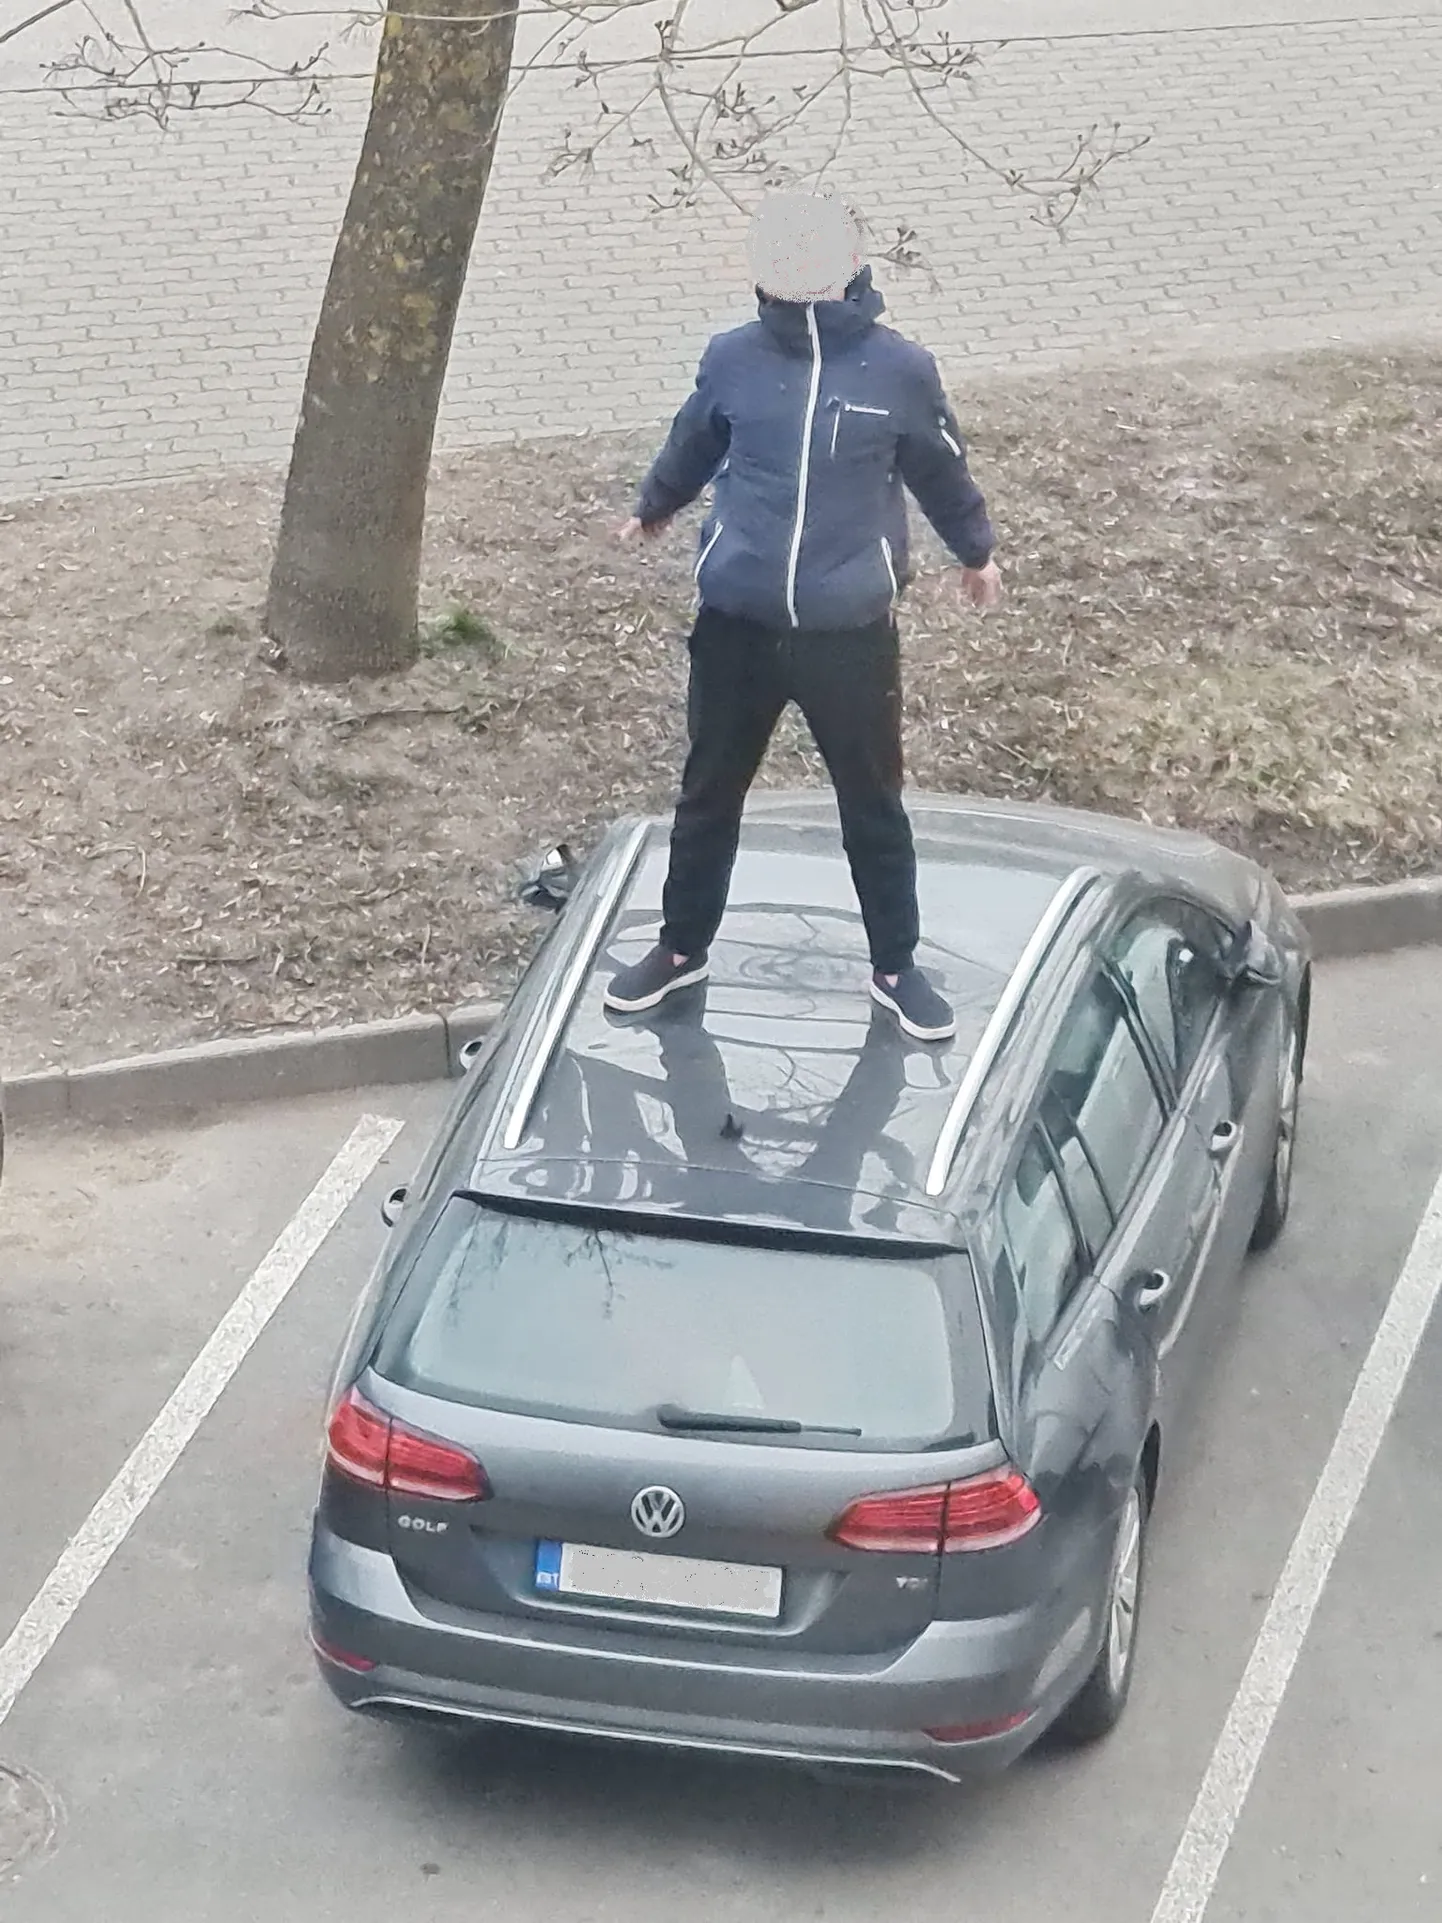 Lasnamäel auto katusel karjunud mees.